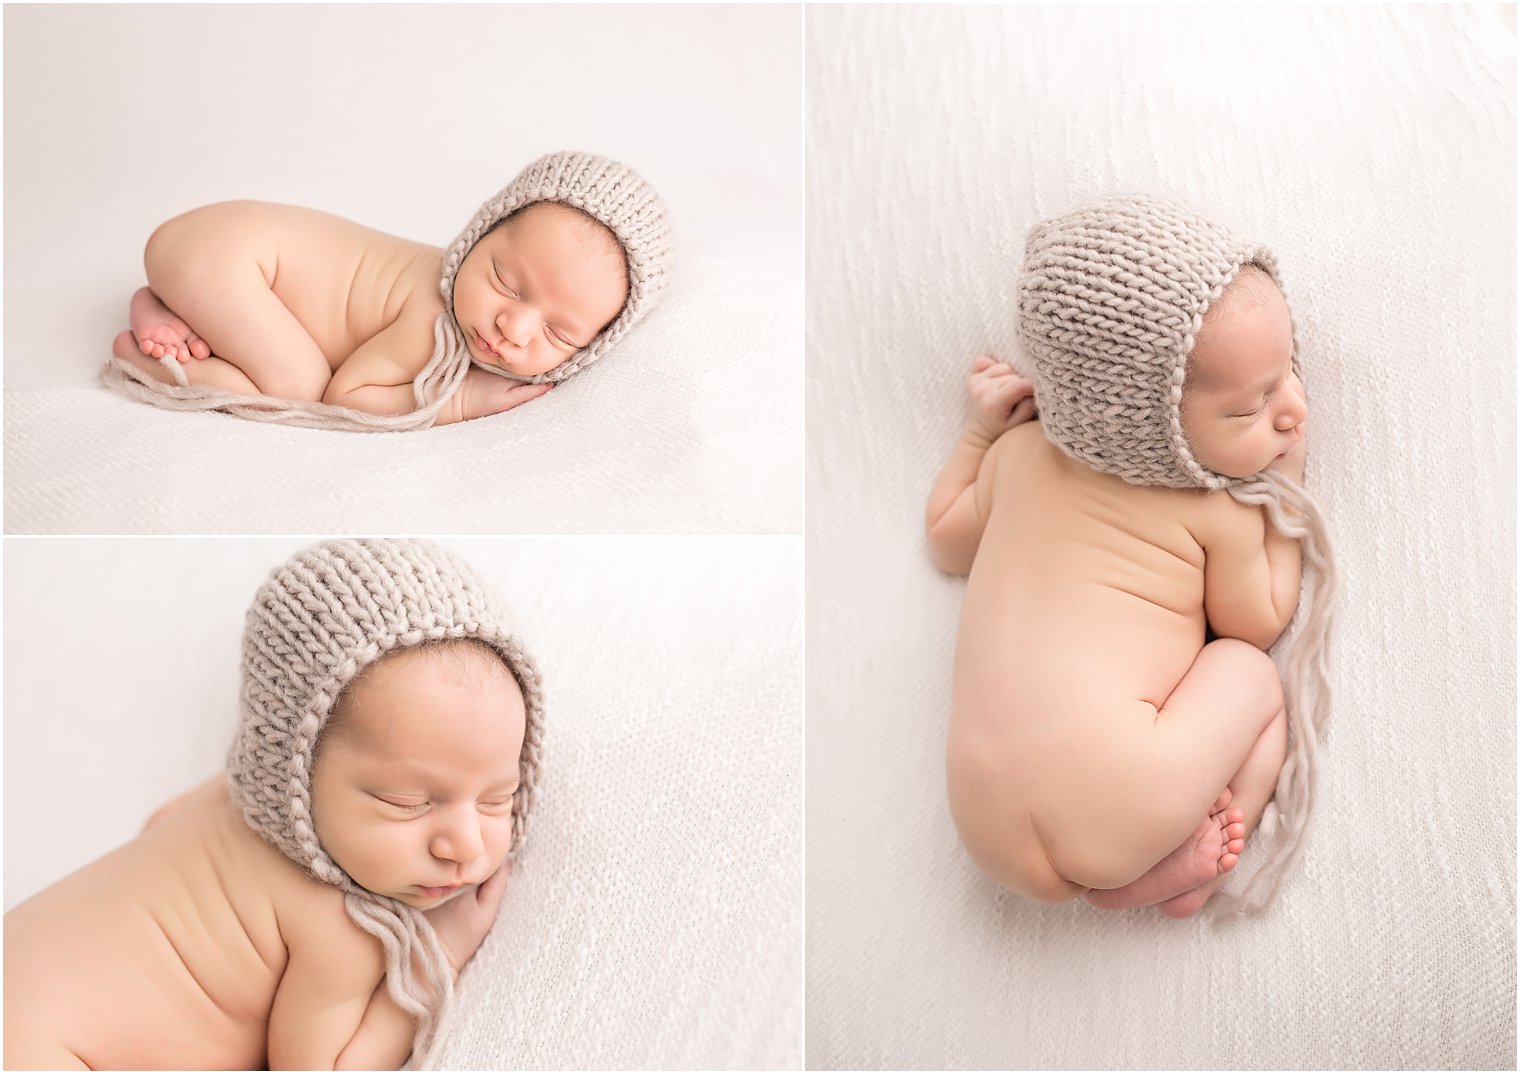 Tushie-up newborn pose